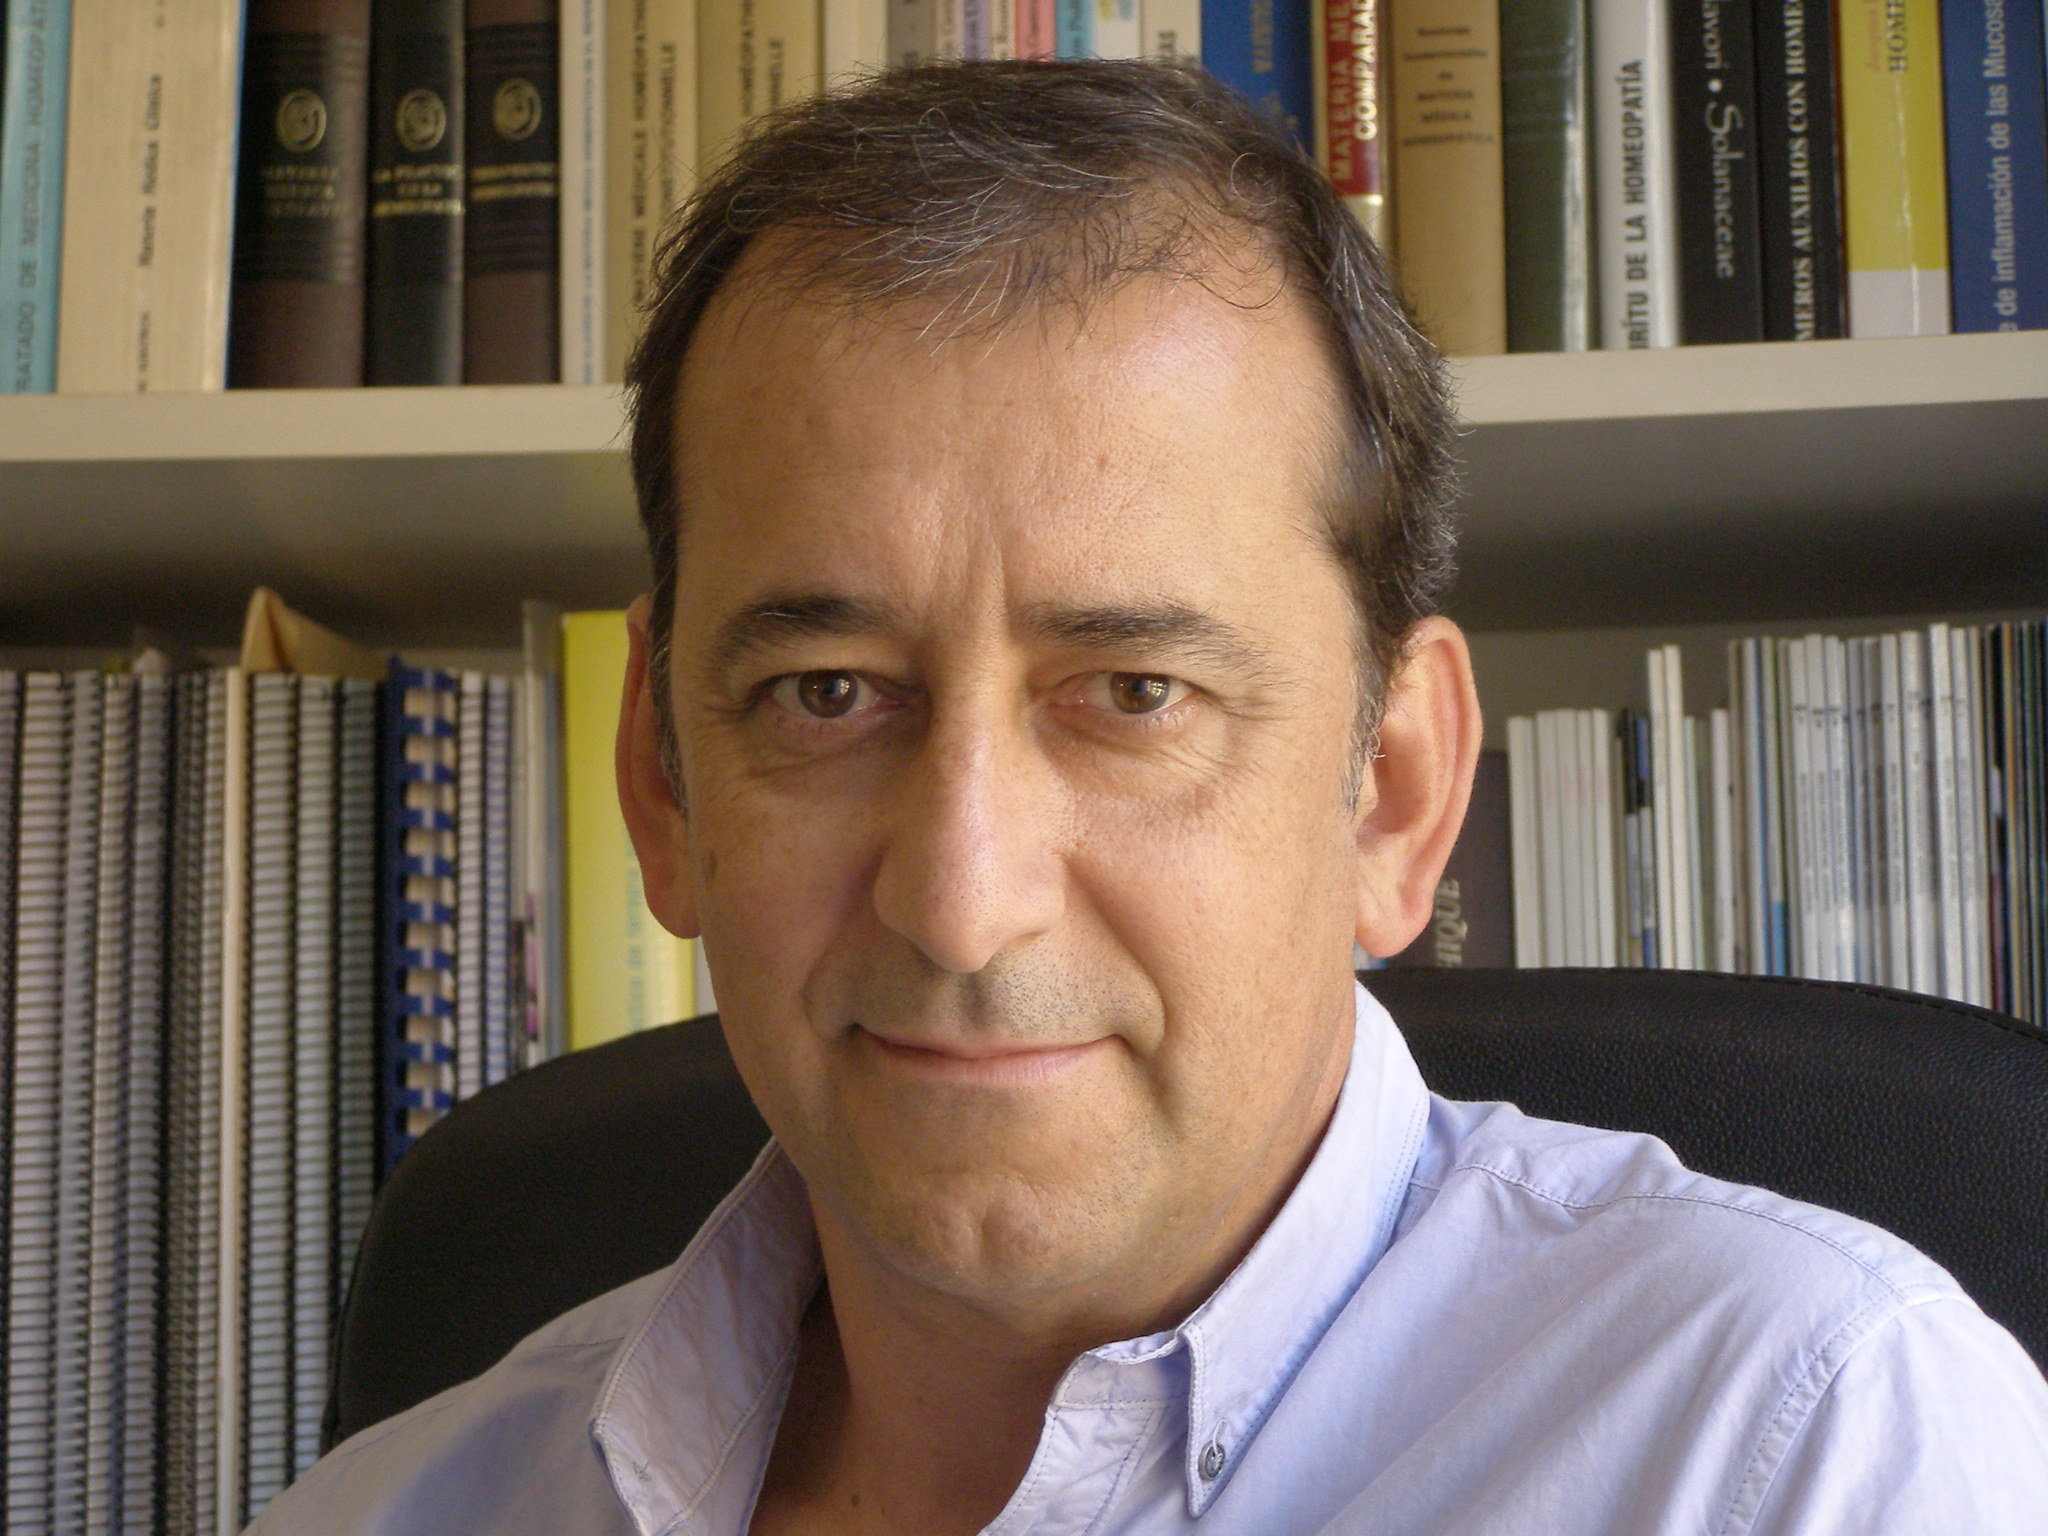 DR. JULIO FERNANDEZ DEL RIO